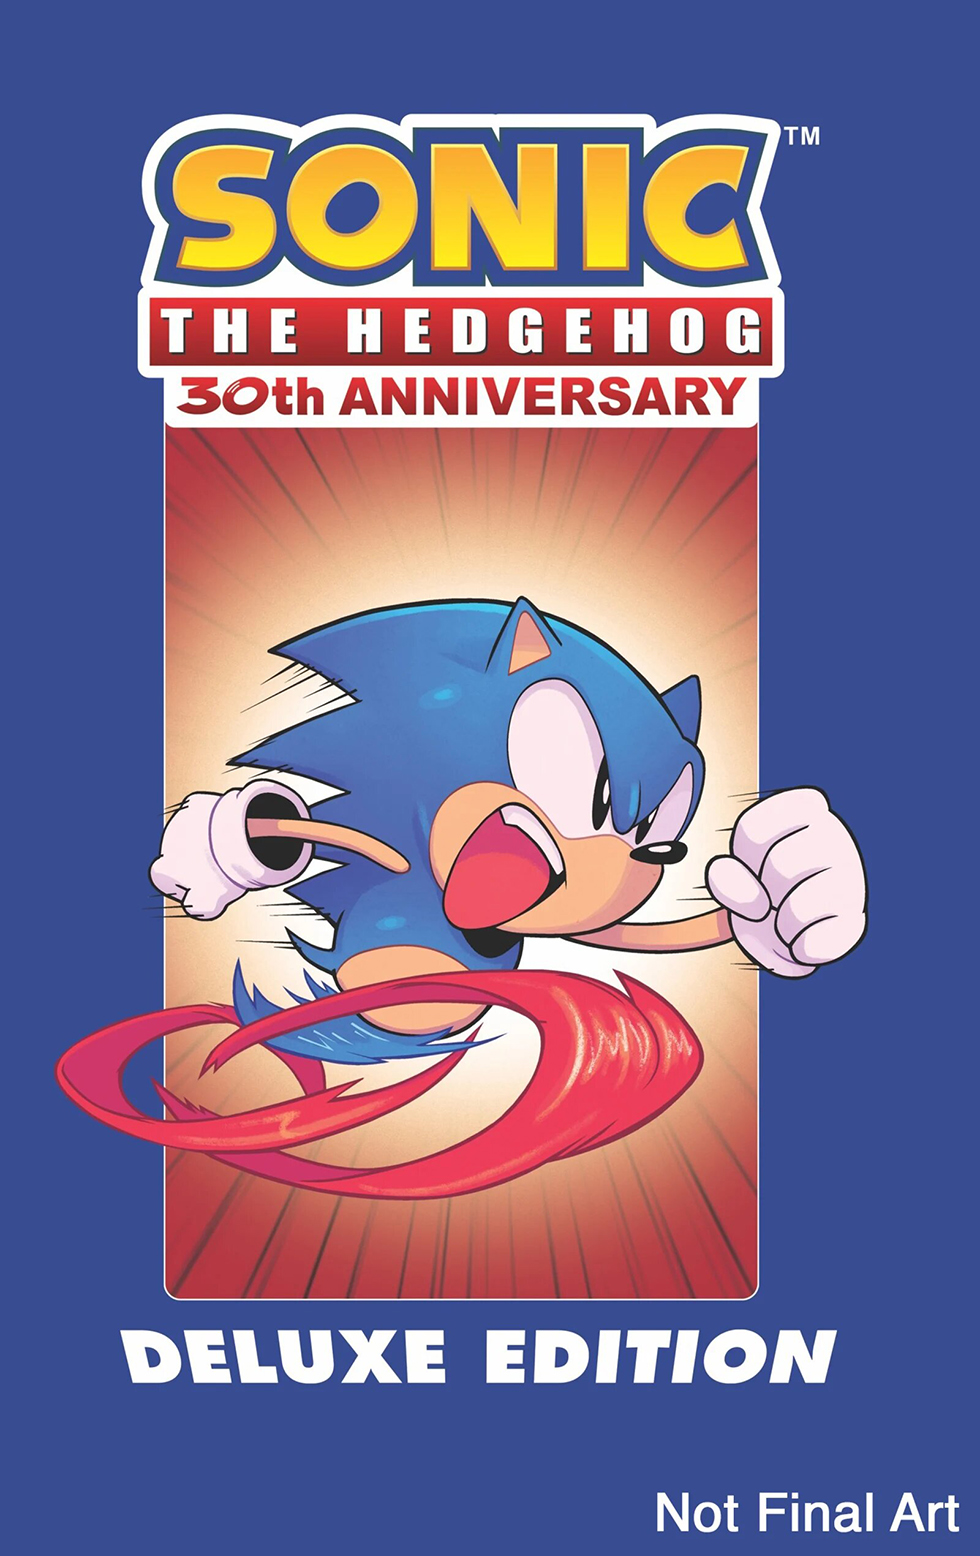 Sonic cómic 30° aniversario